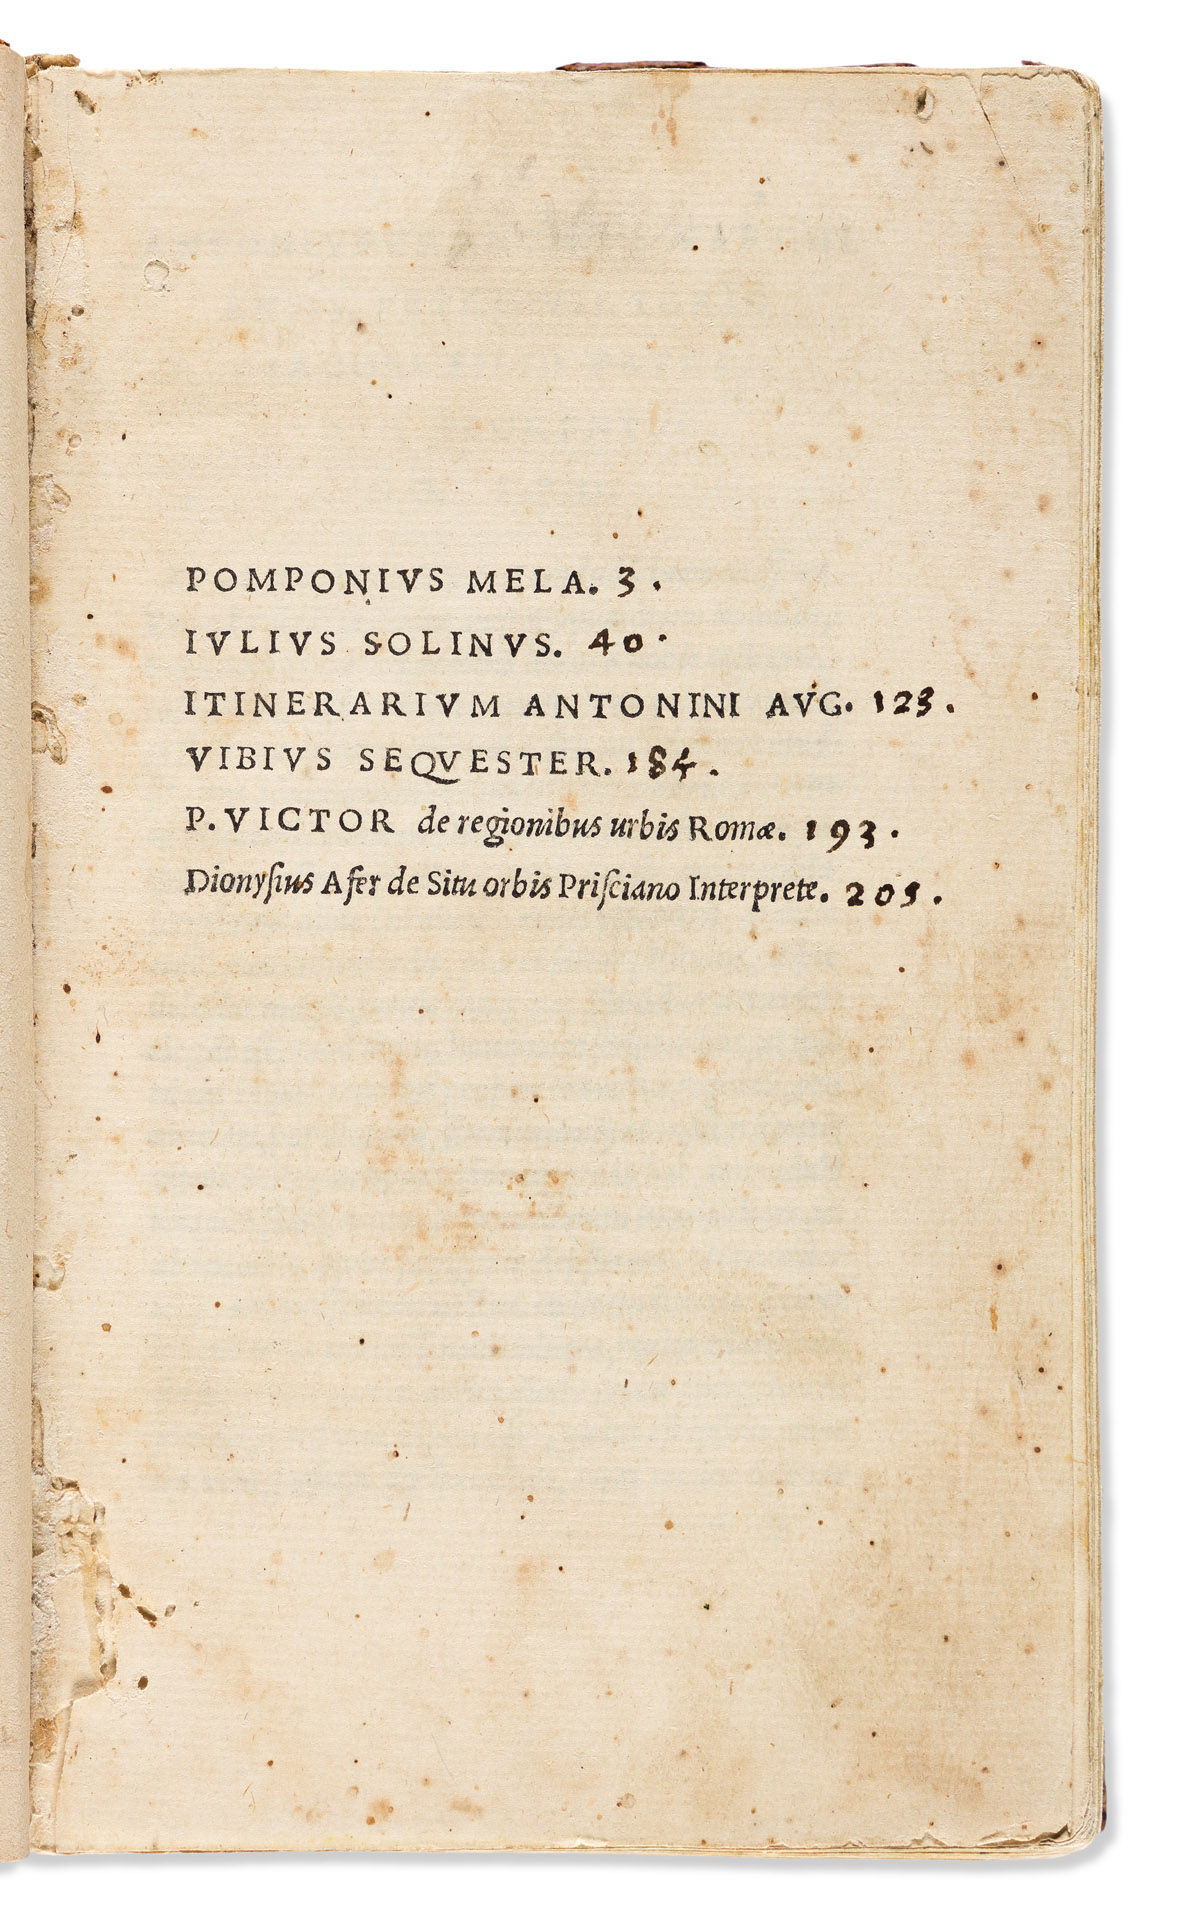 Mela, Pomponius; Julius Solinus, et alia. De Situ Orbis and Other Works.